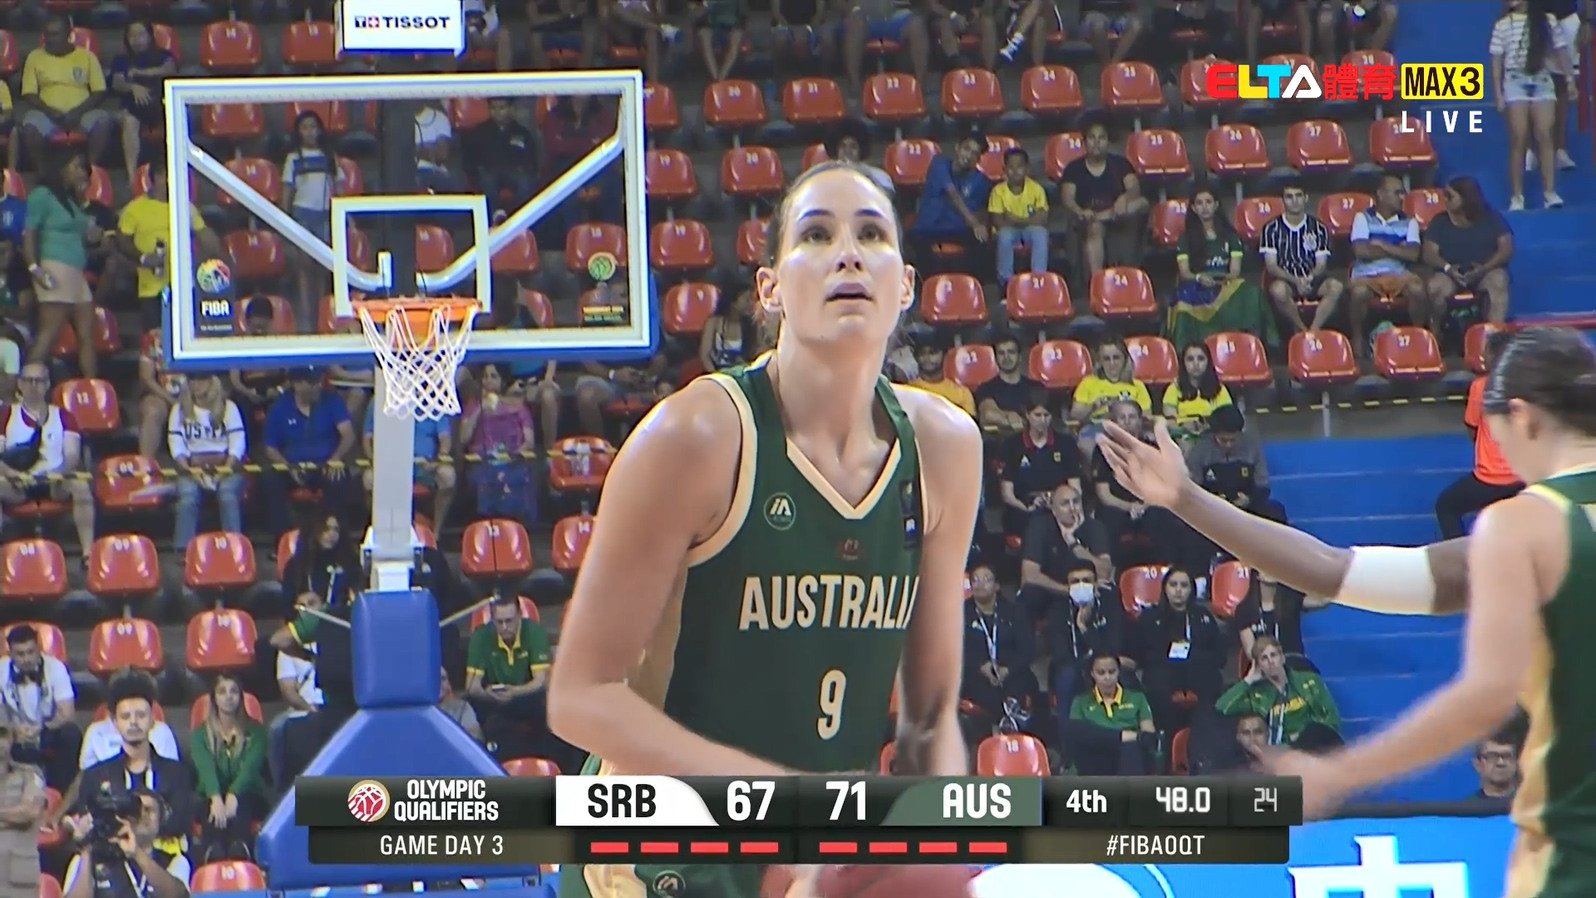 02/12 FIBA女子籃球奧運資格賽 塞爾維亞VS澳大利亞 (現場原音)